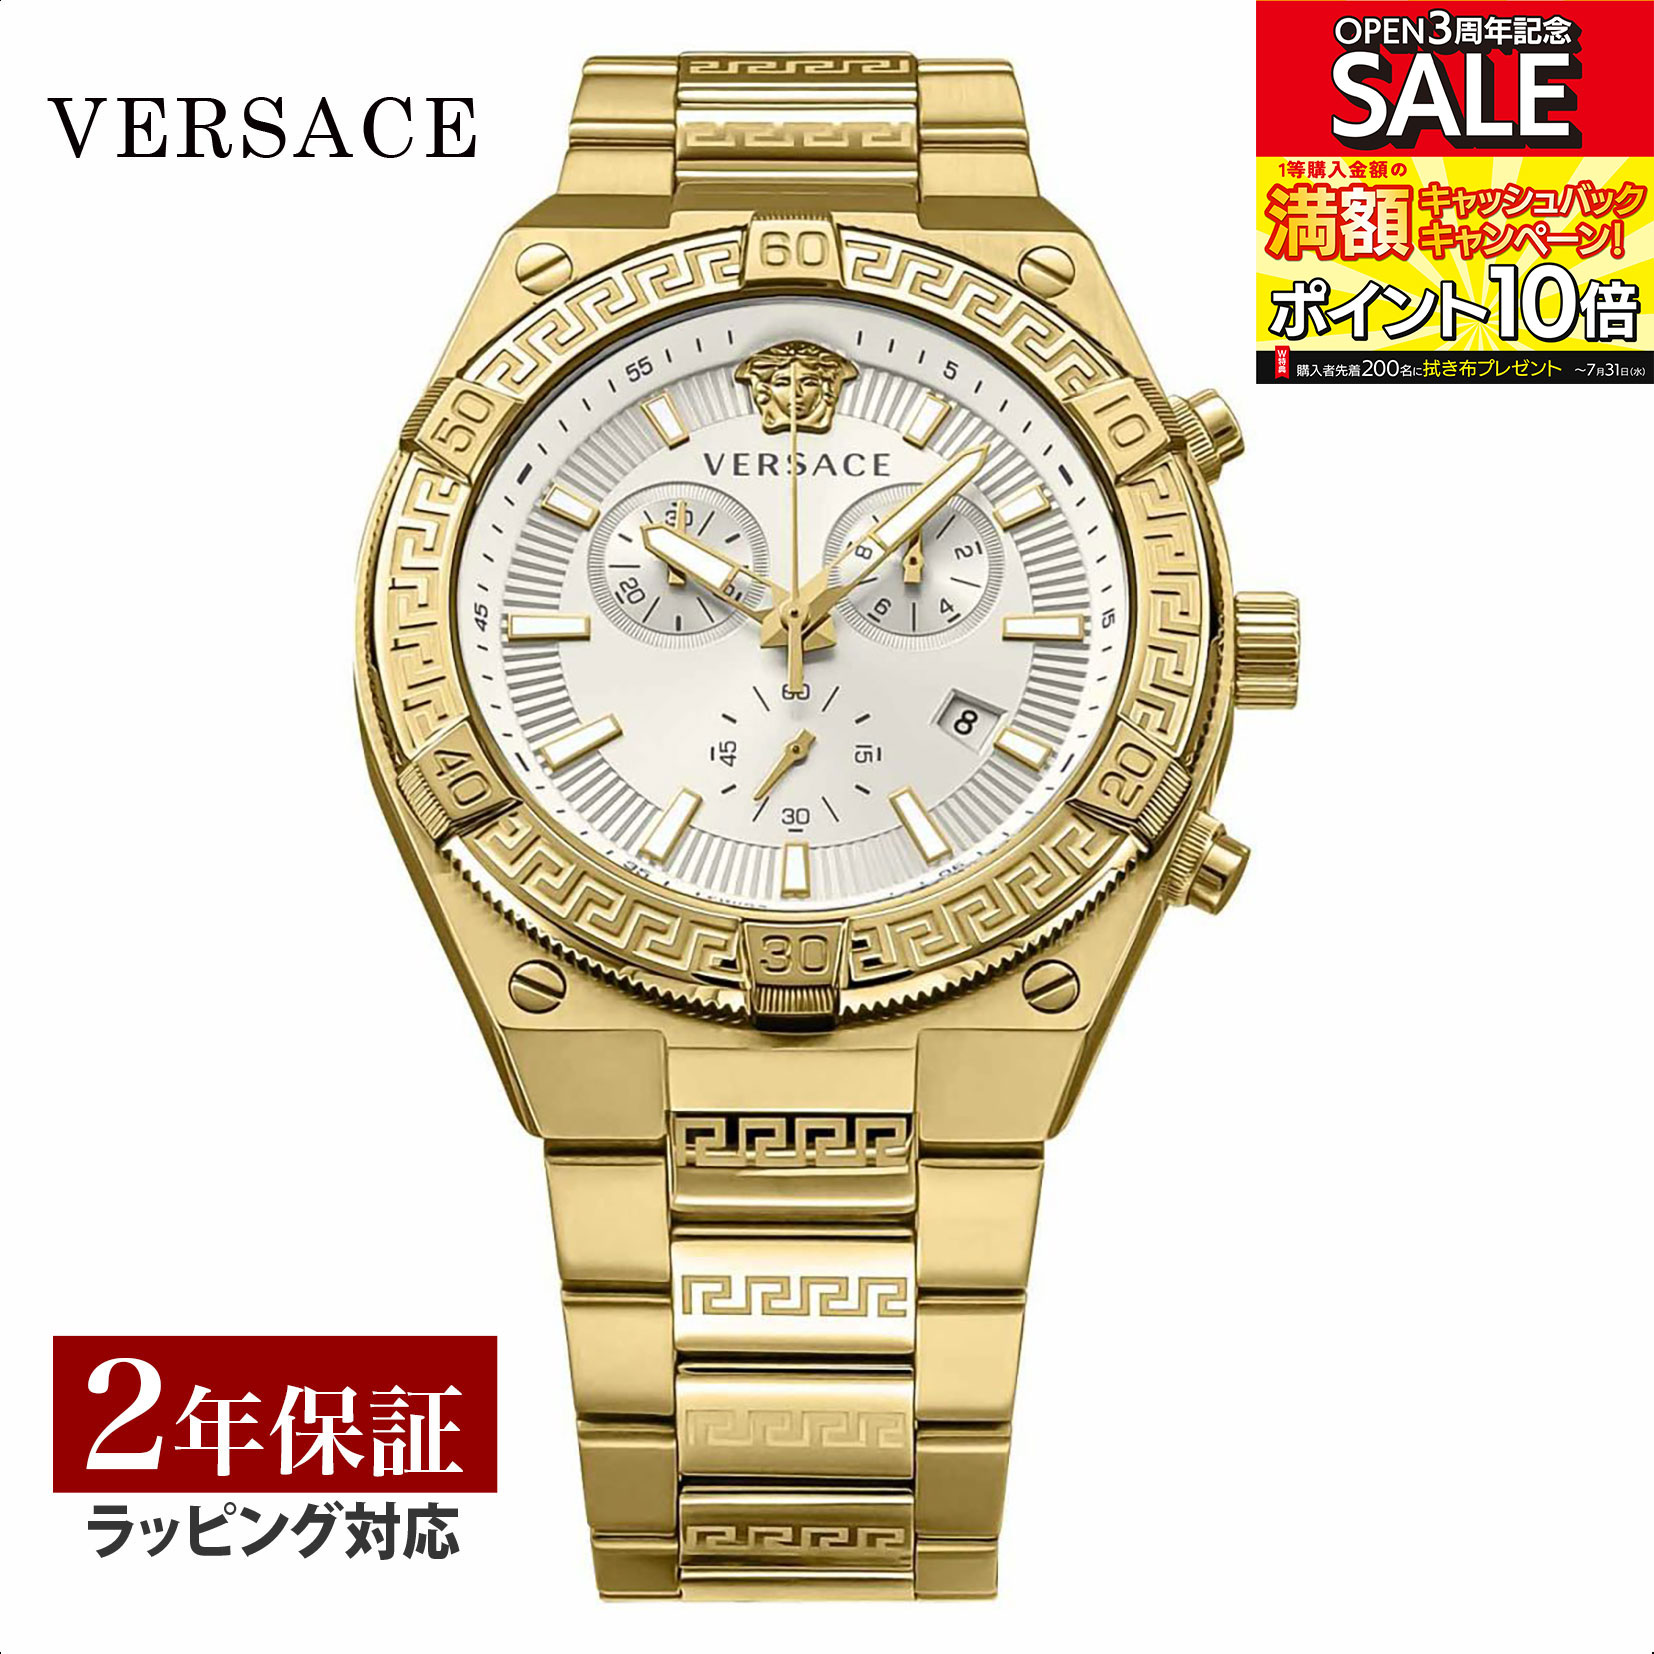 ヴェルサーチェ 腕時計（メンズ） ヴェルサーチェ ヴェルサーチ VERSACE メンズ 時計 SPORTY GRECA スポーティー グレカ クォーツ ブラック VESO00822 時計 腕時計 高級腕時計 ブランド